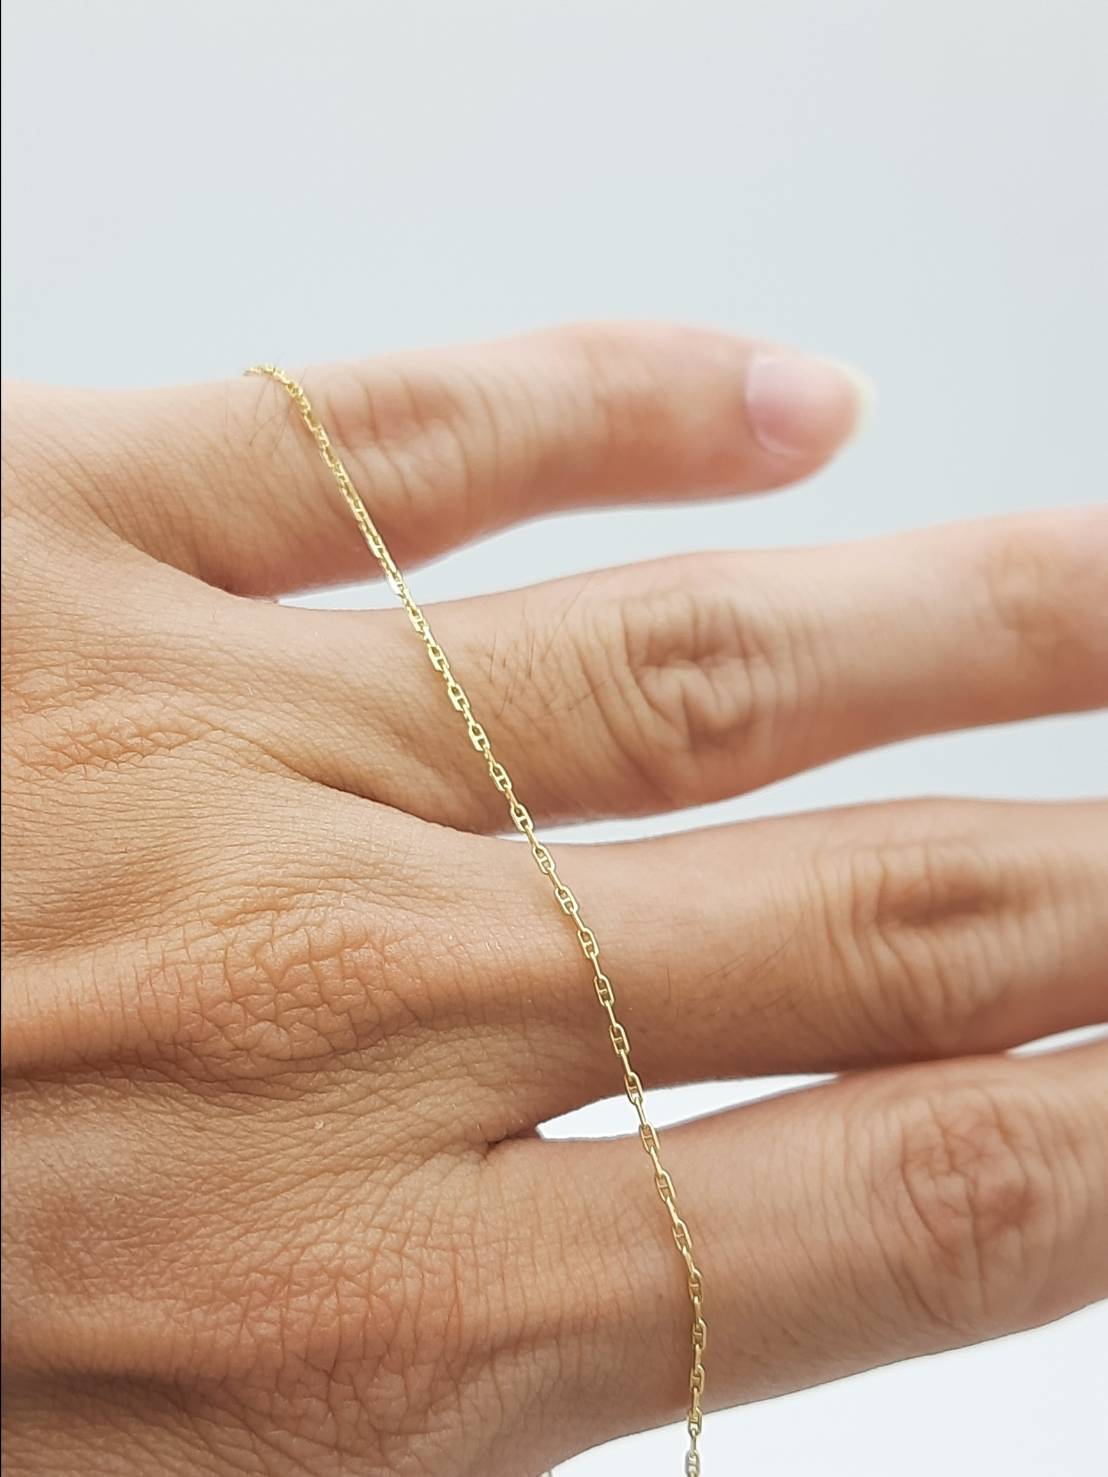 SK Jewelry สร้อยคอลายกุชชี่ ทองแท้ 9K (37.50%) ยาว 16 นิ้ว และ 18 นิ้ว สวยๆ ไฮๆ ยอดนิยม ราคาถูก มีสินค้าพร้อมส่ง